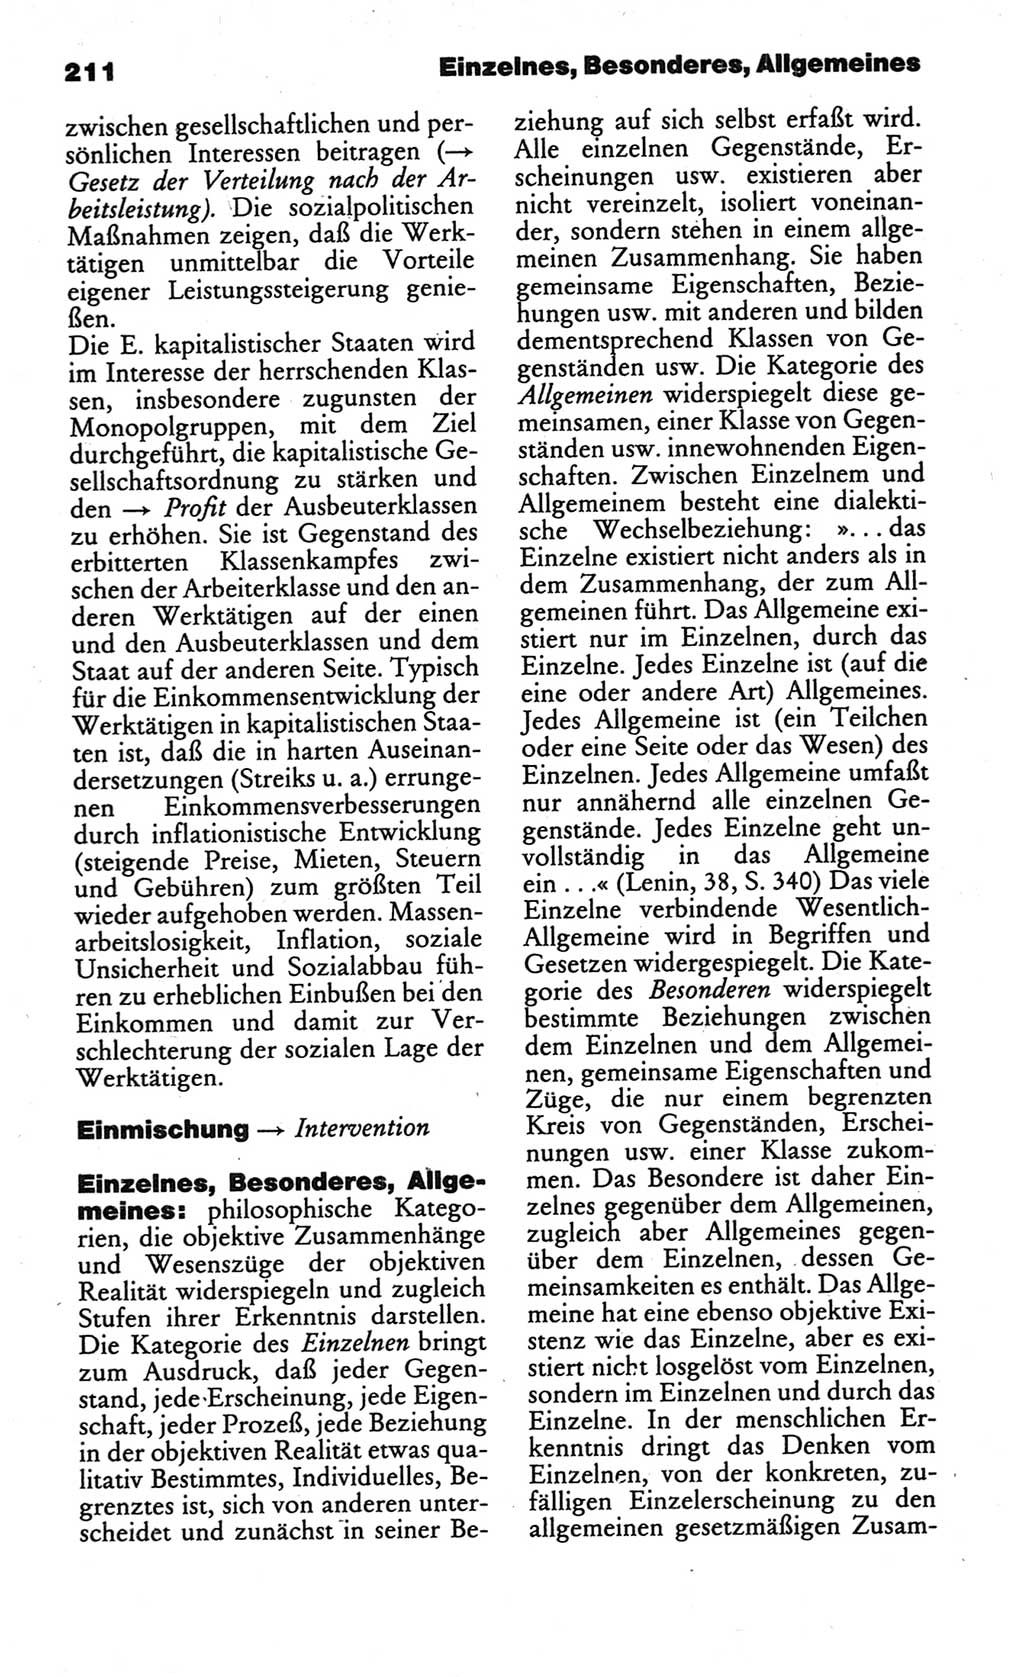 Kleines politisches Wörterbuch [Deutsche Demokratische Republik (DDR)] 1986, Seite 211 (Kl. pol. Wb. DDR 1986, S. 211)